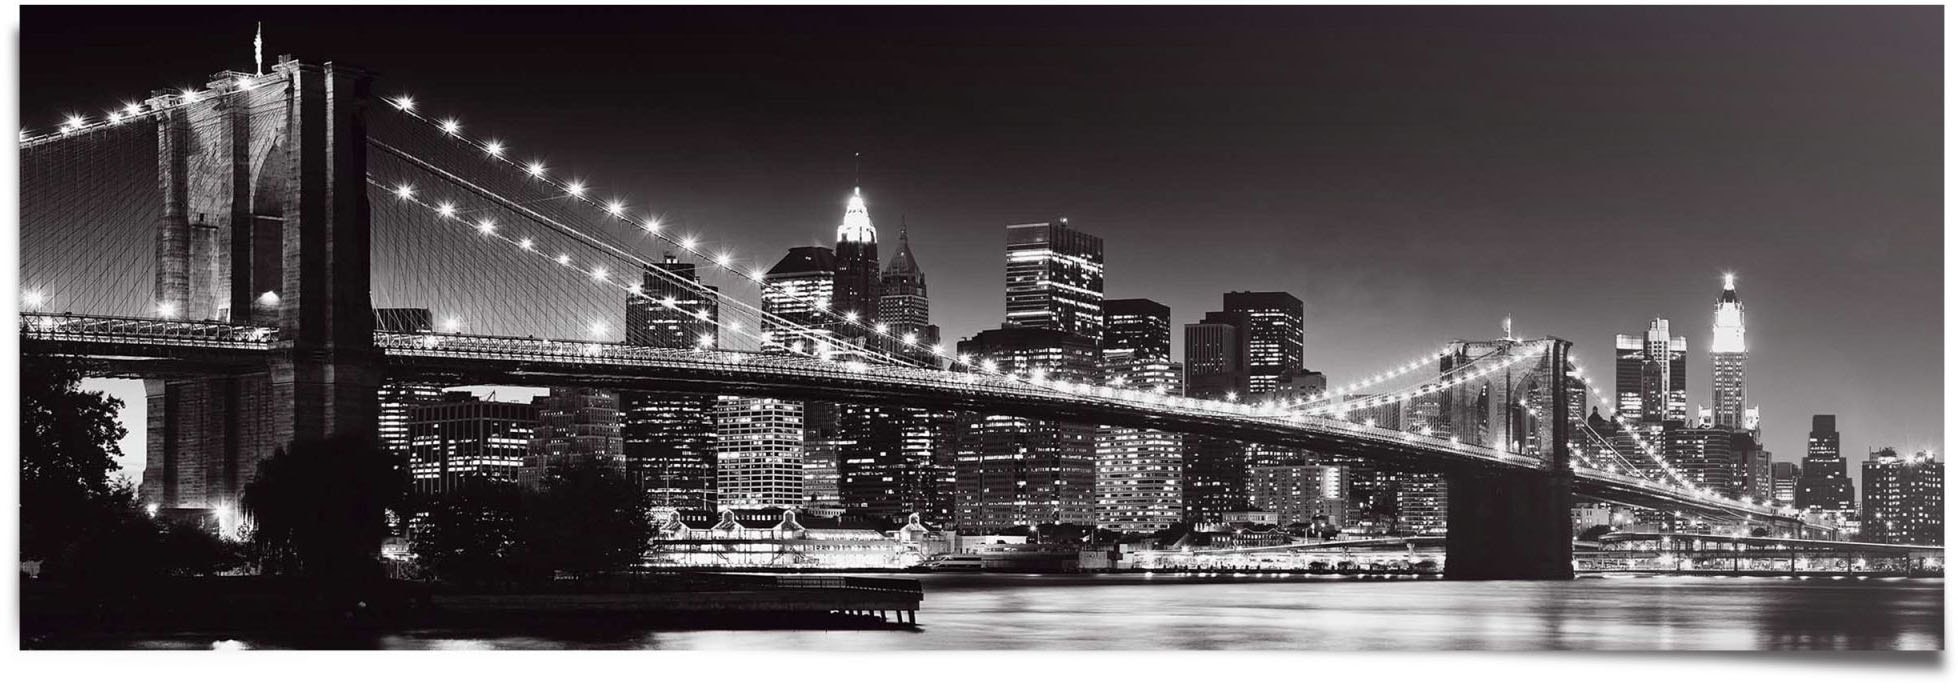 Reinders! Poster »New York Brooklyn Bridge« (1 S...